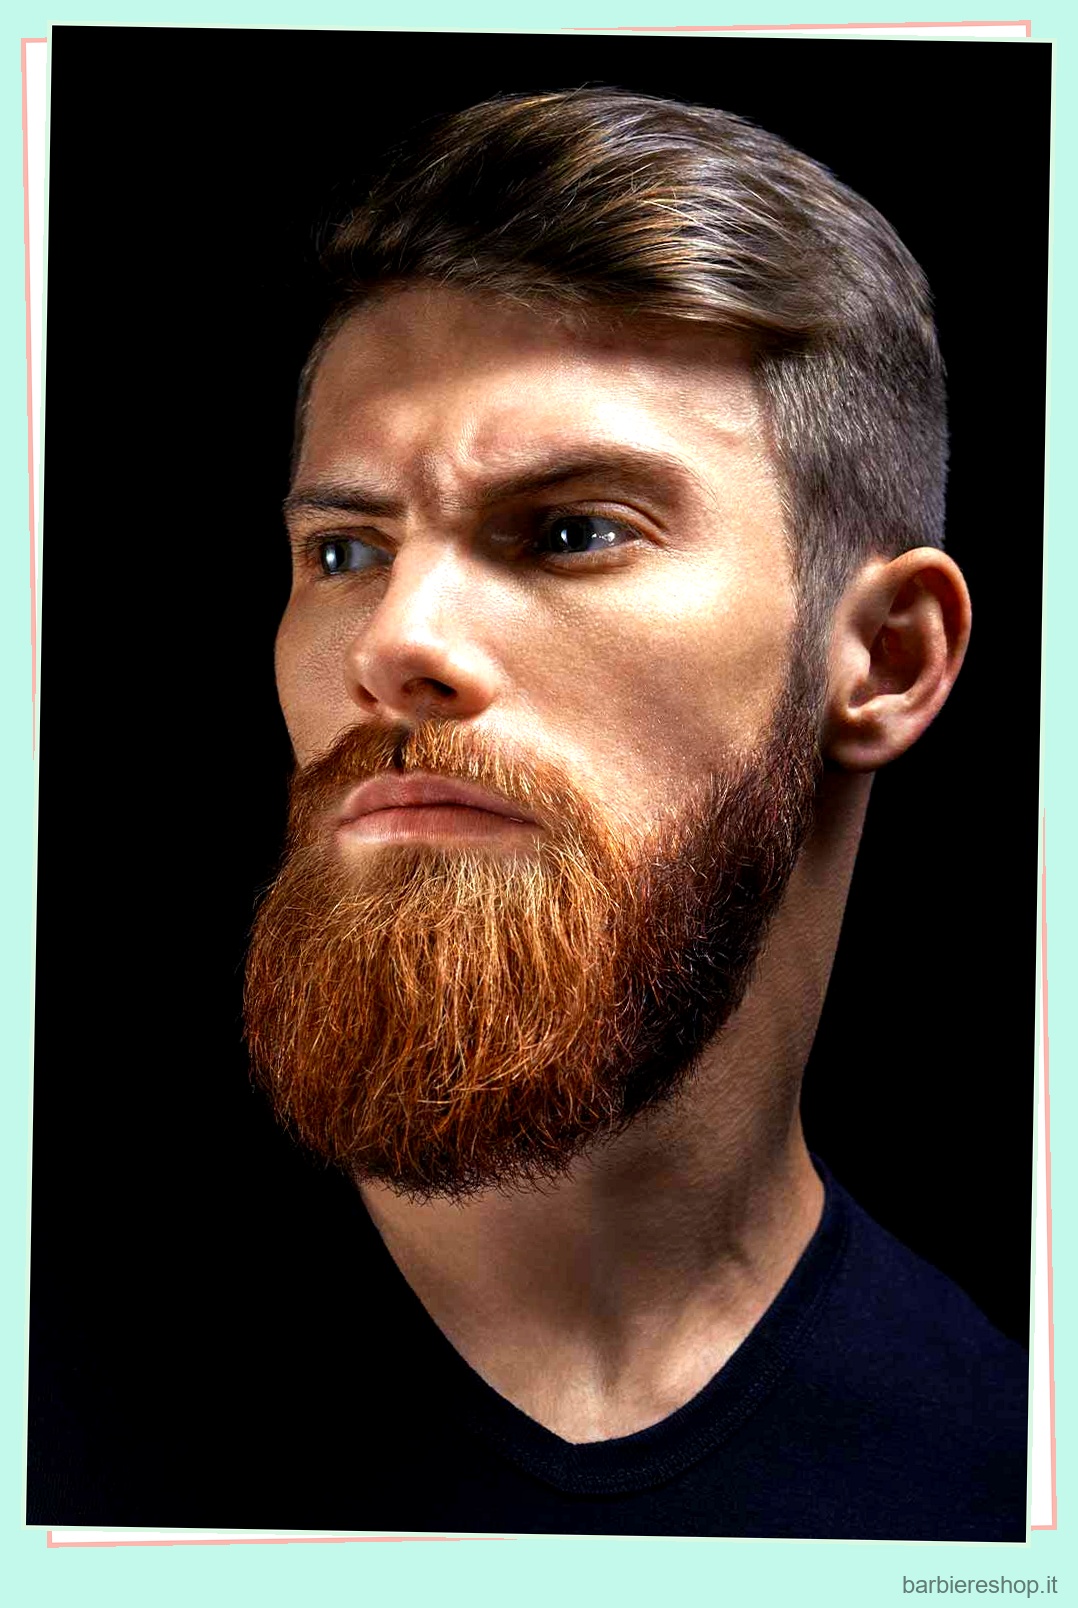 I migliori stili di barba da provare nel 2023 8